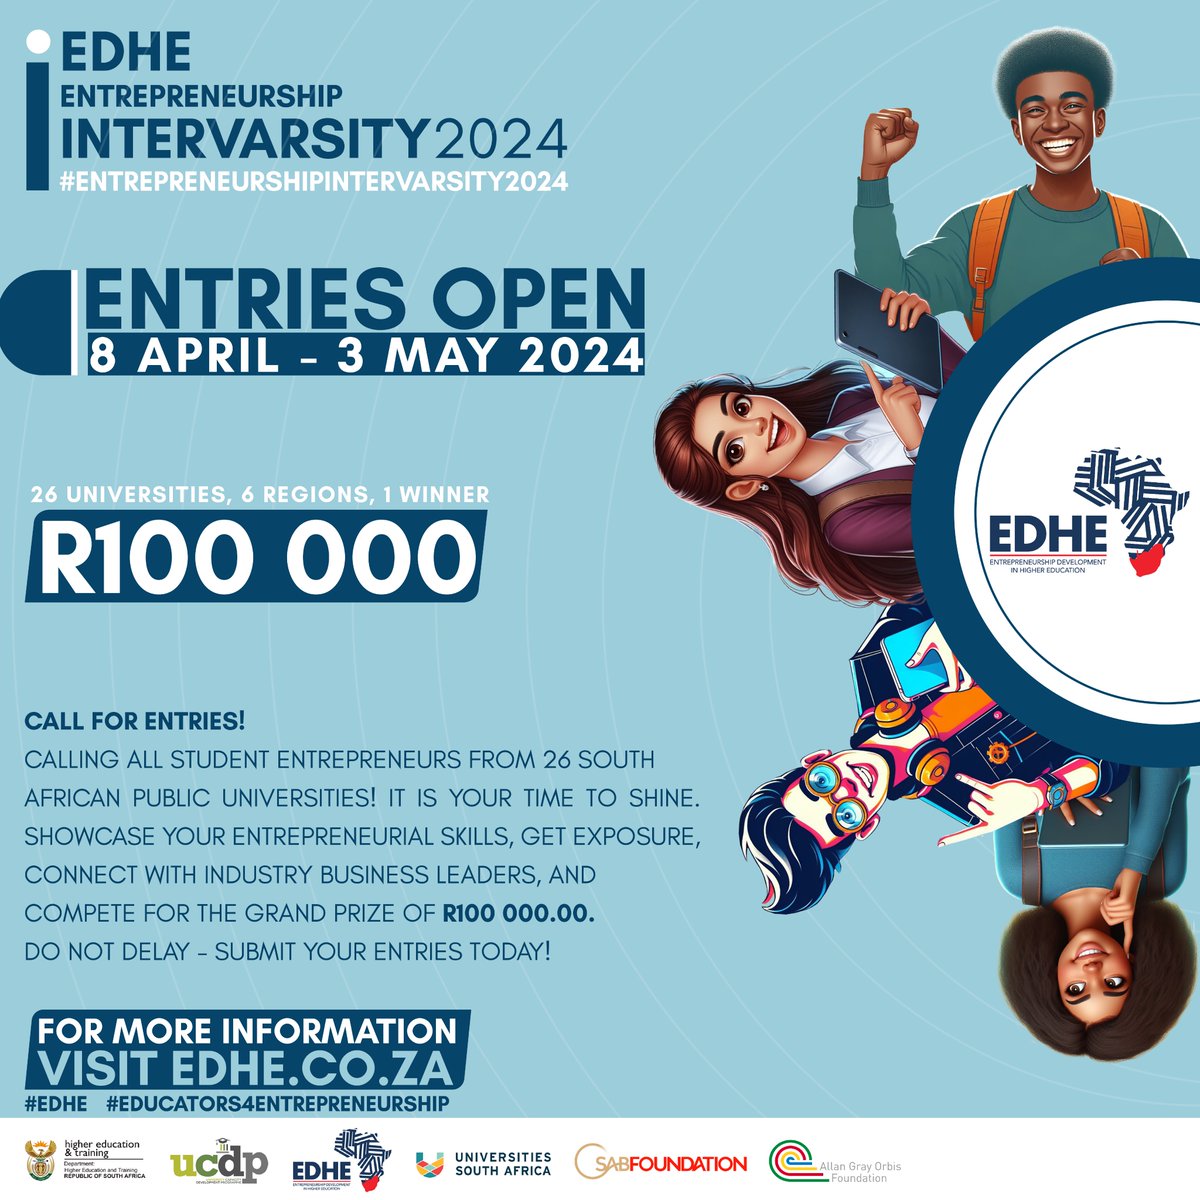 Calling all aspiring student entrepreneurs! Applications are open for the @EDHEStudents #EntrepreneurshipIntervarsity2024 Read here for more information: edhe.co.za